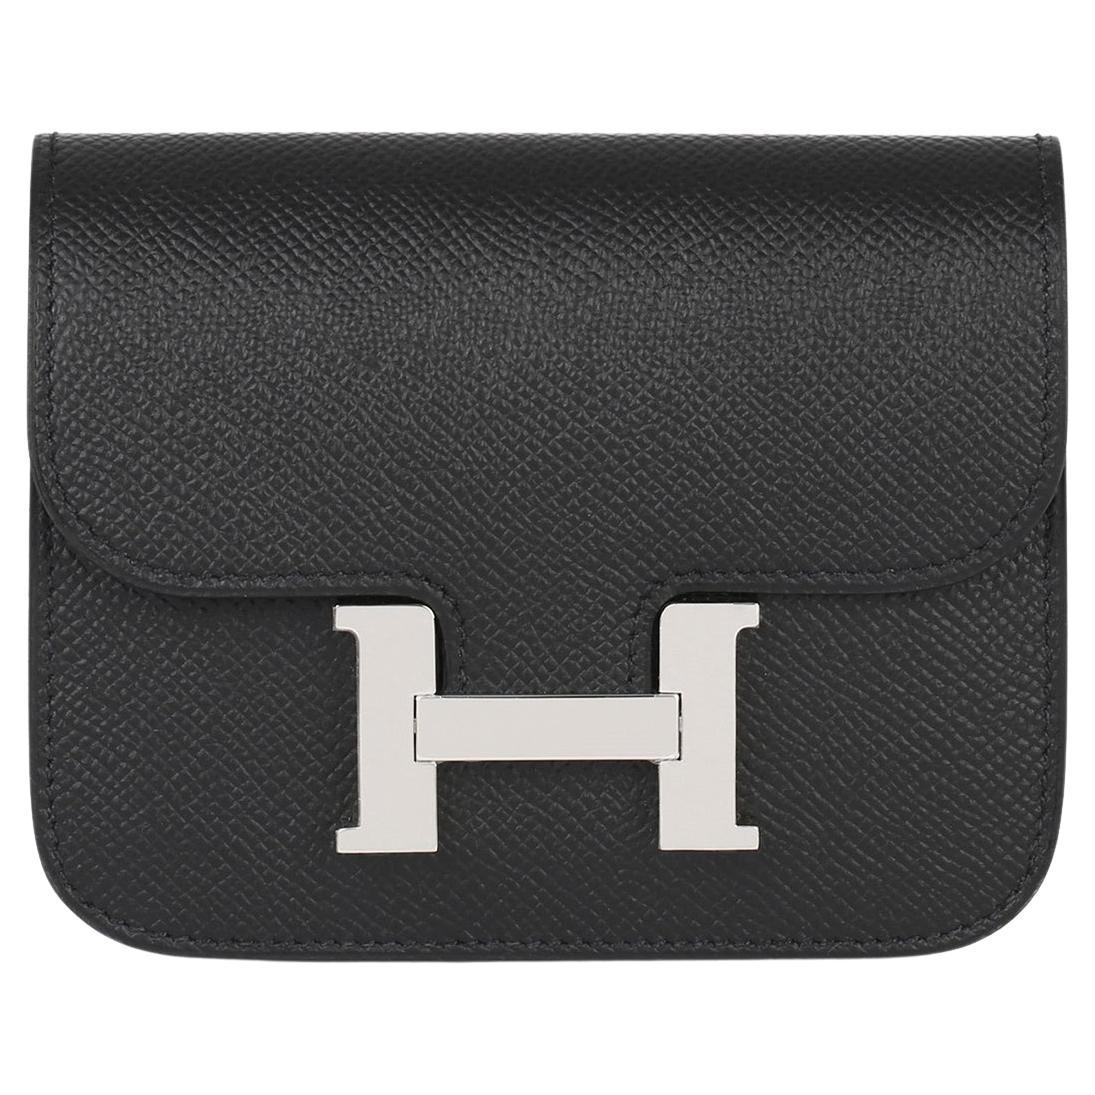 Hermès Black Epsom Leather Constance Slim Wallet